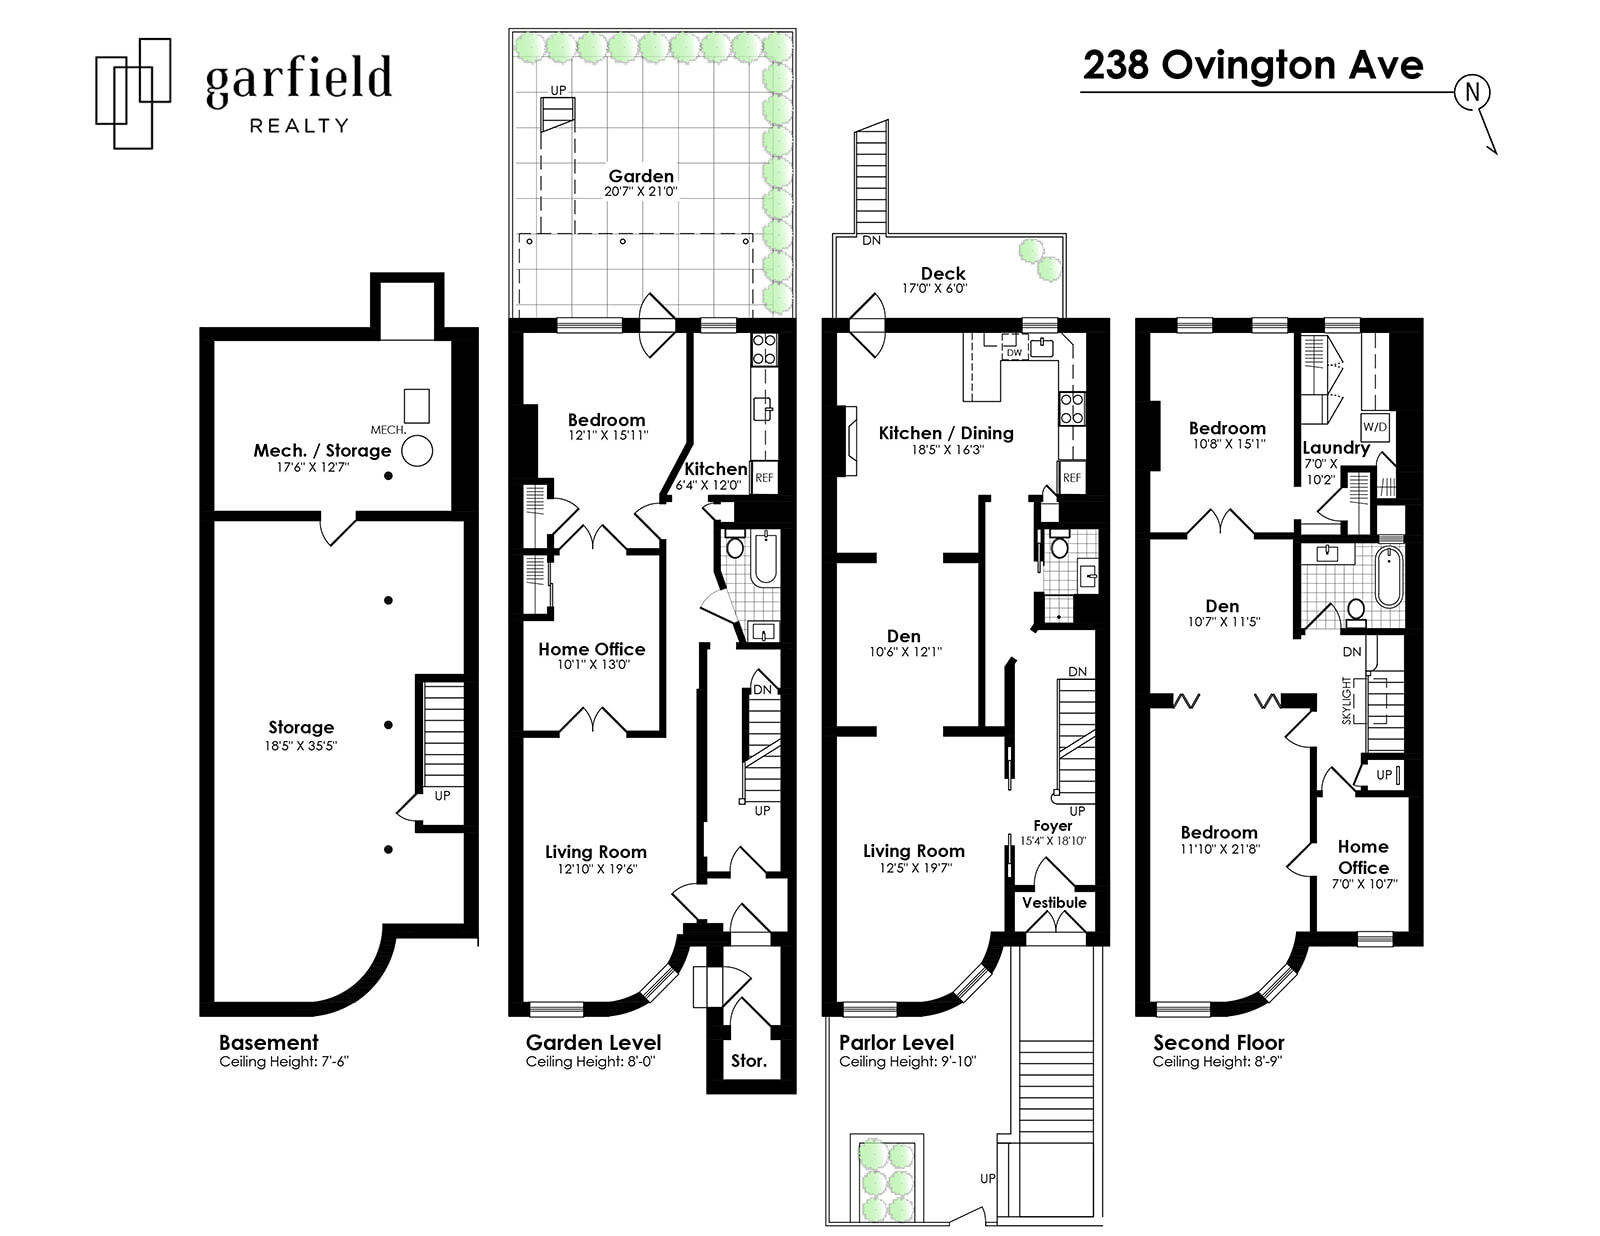 Floorplan of 238 Ovington Ave